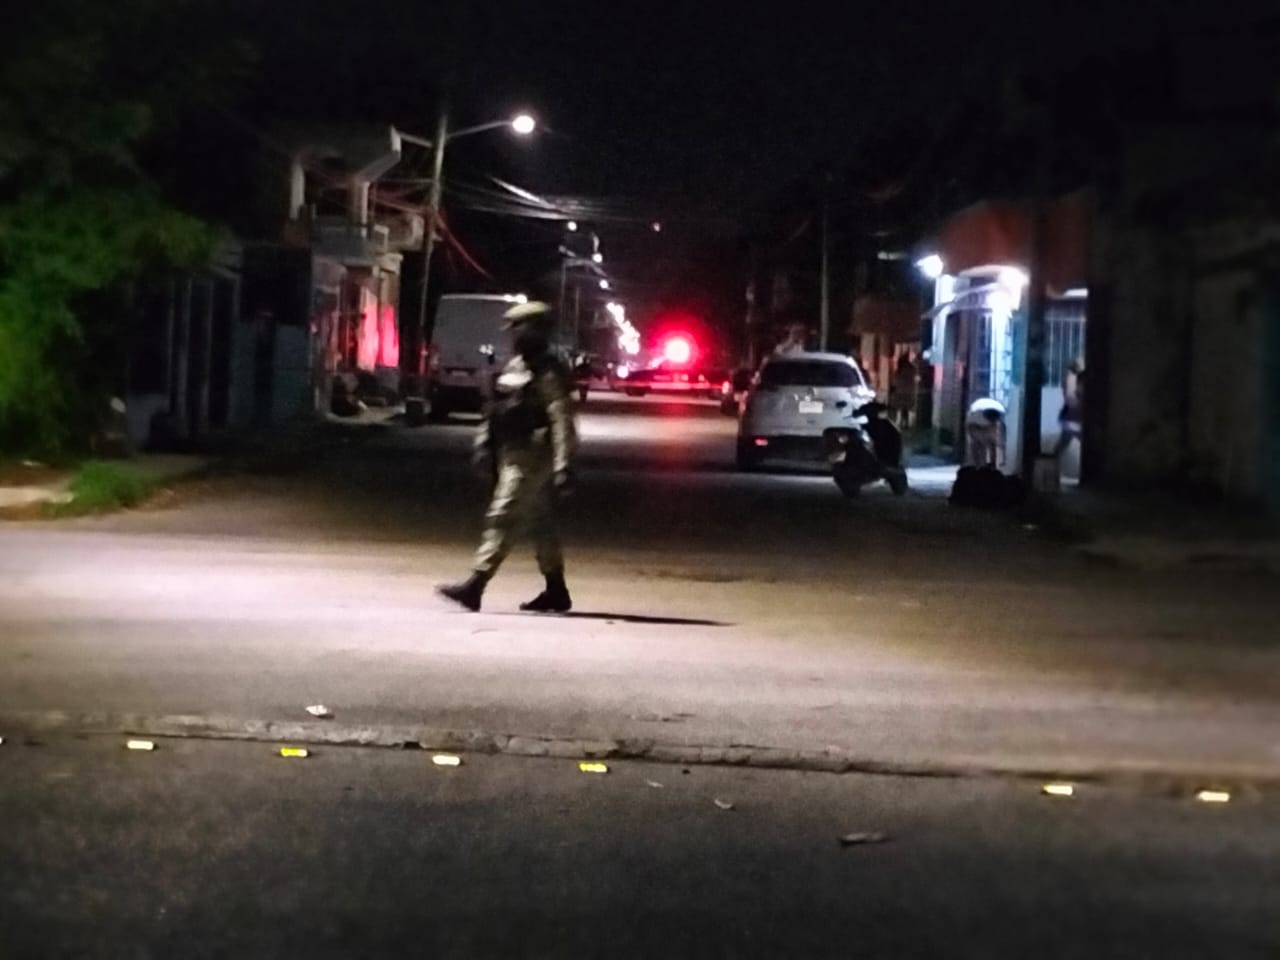 Hombres disparan cerca de un parque en Cozumel; habia niños jugado